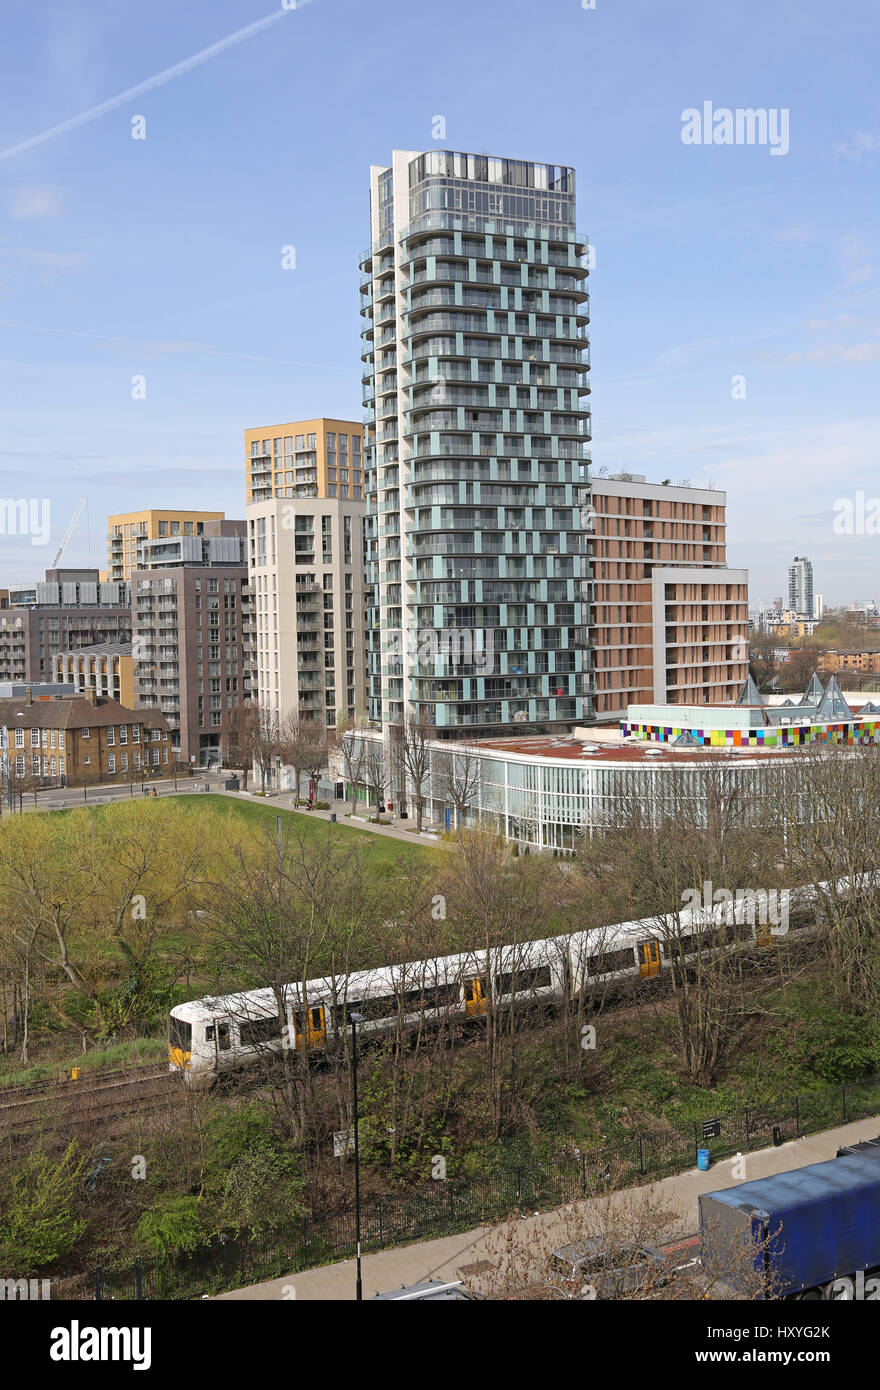 Vista de alto nivel de Lewisham Town Center, al sureste de Londres, Reino Unido, mostrando nuevos desarrollos residenciales, centro de deportes, ferrocarril y giratorias sistema. Foto de stock